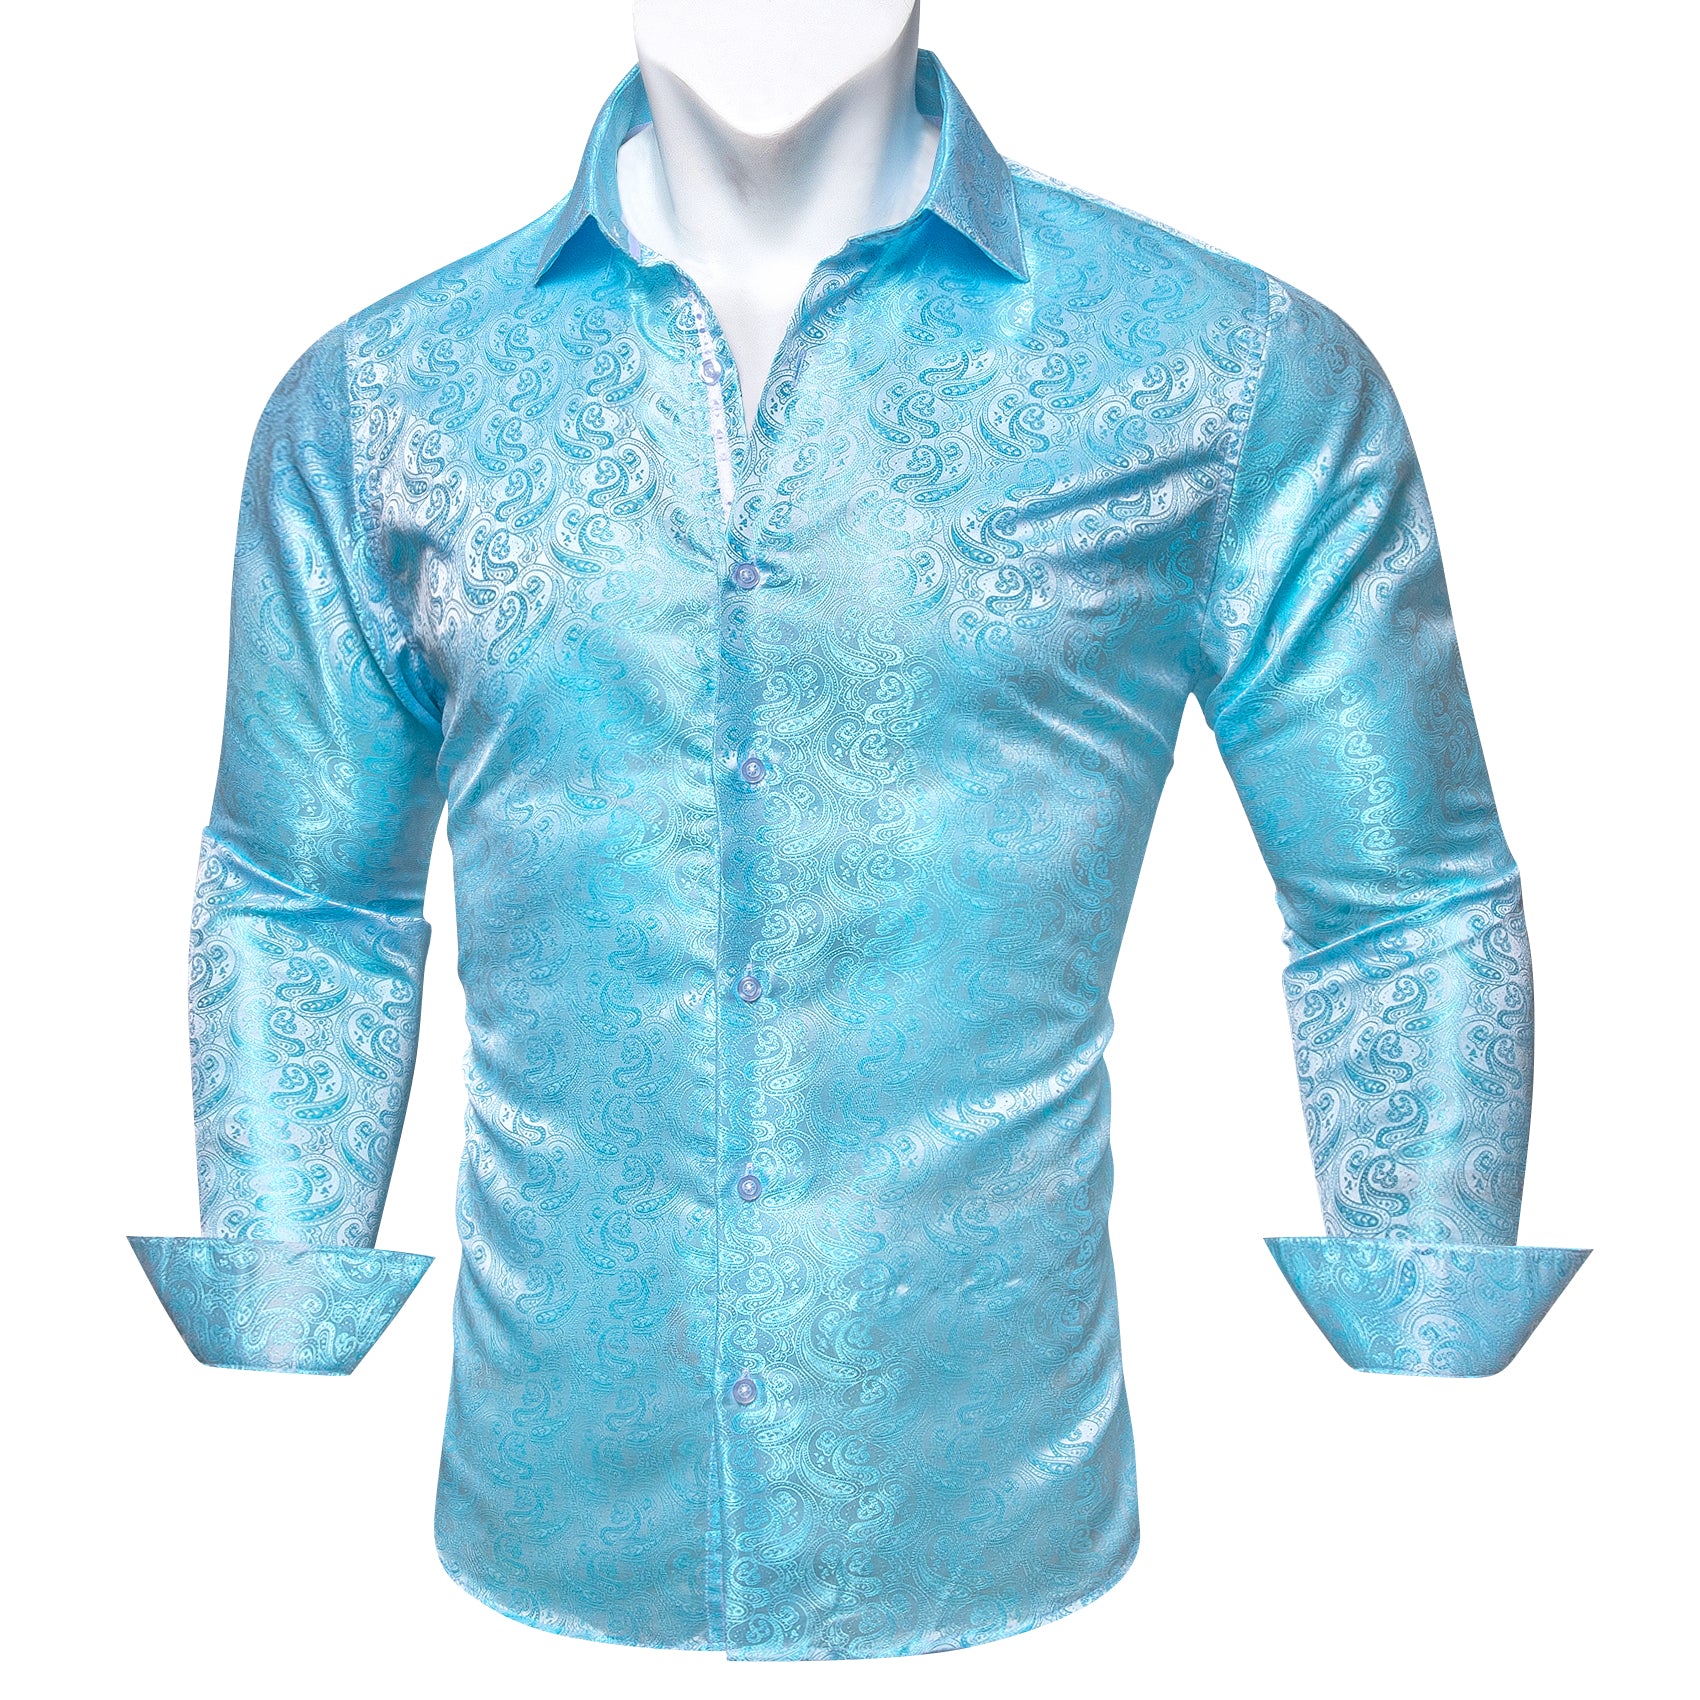 Barry.wang Button Down Shirt Teal Blue Paisley Silk Men's Long Sleeve Shirt